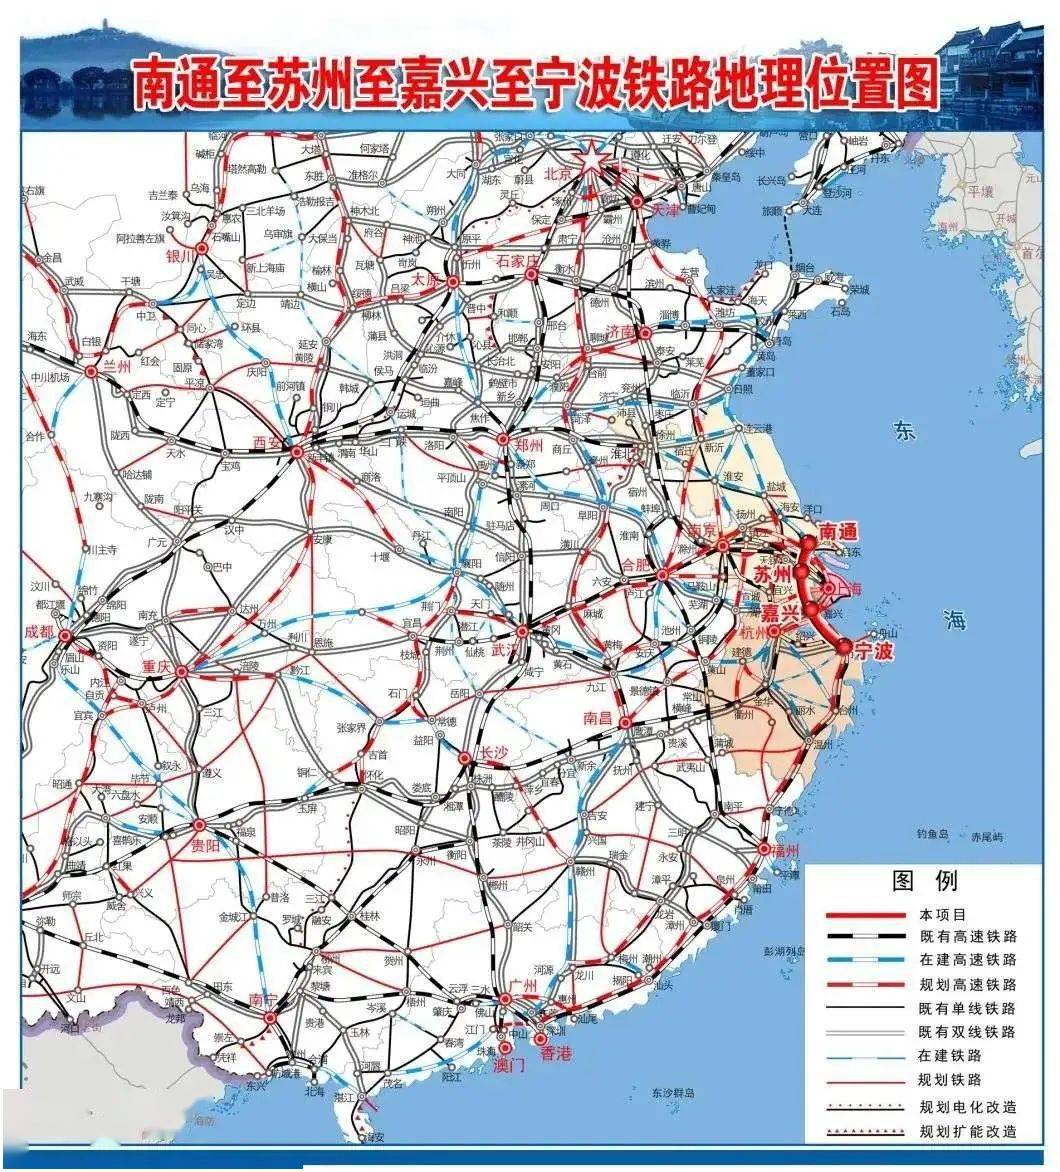 总投资3500亿:江苏省11条重大铁路最新动态来袭